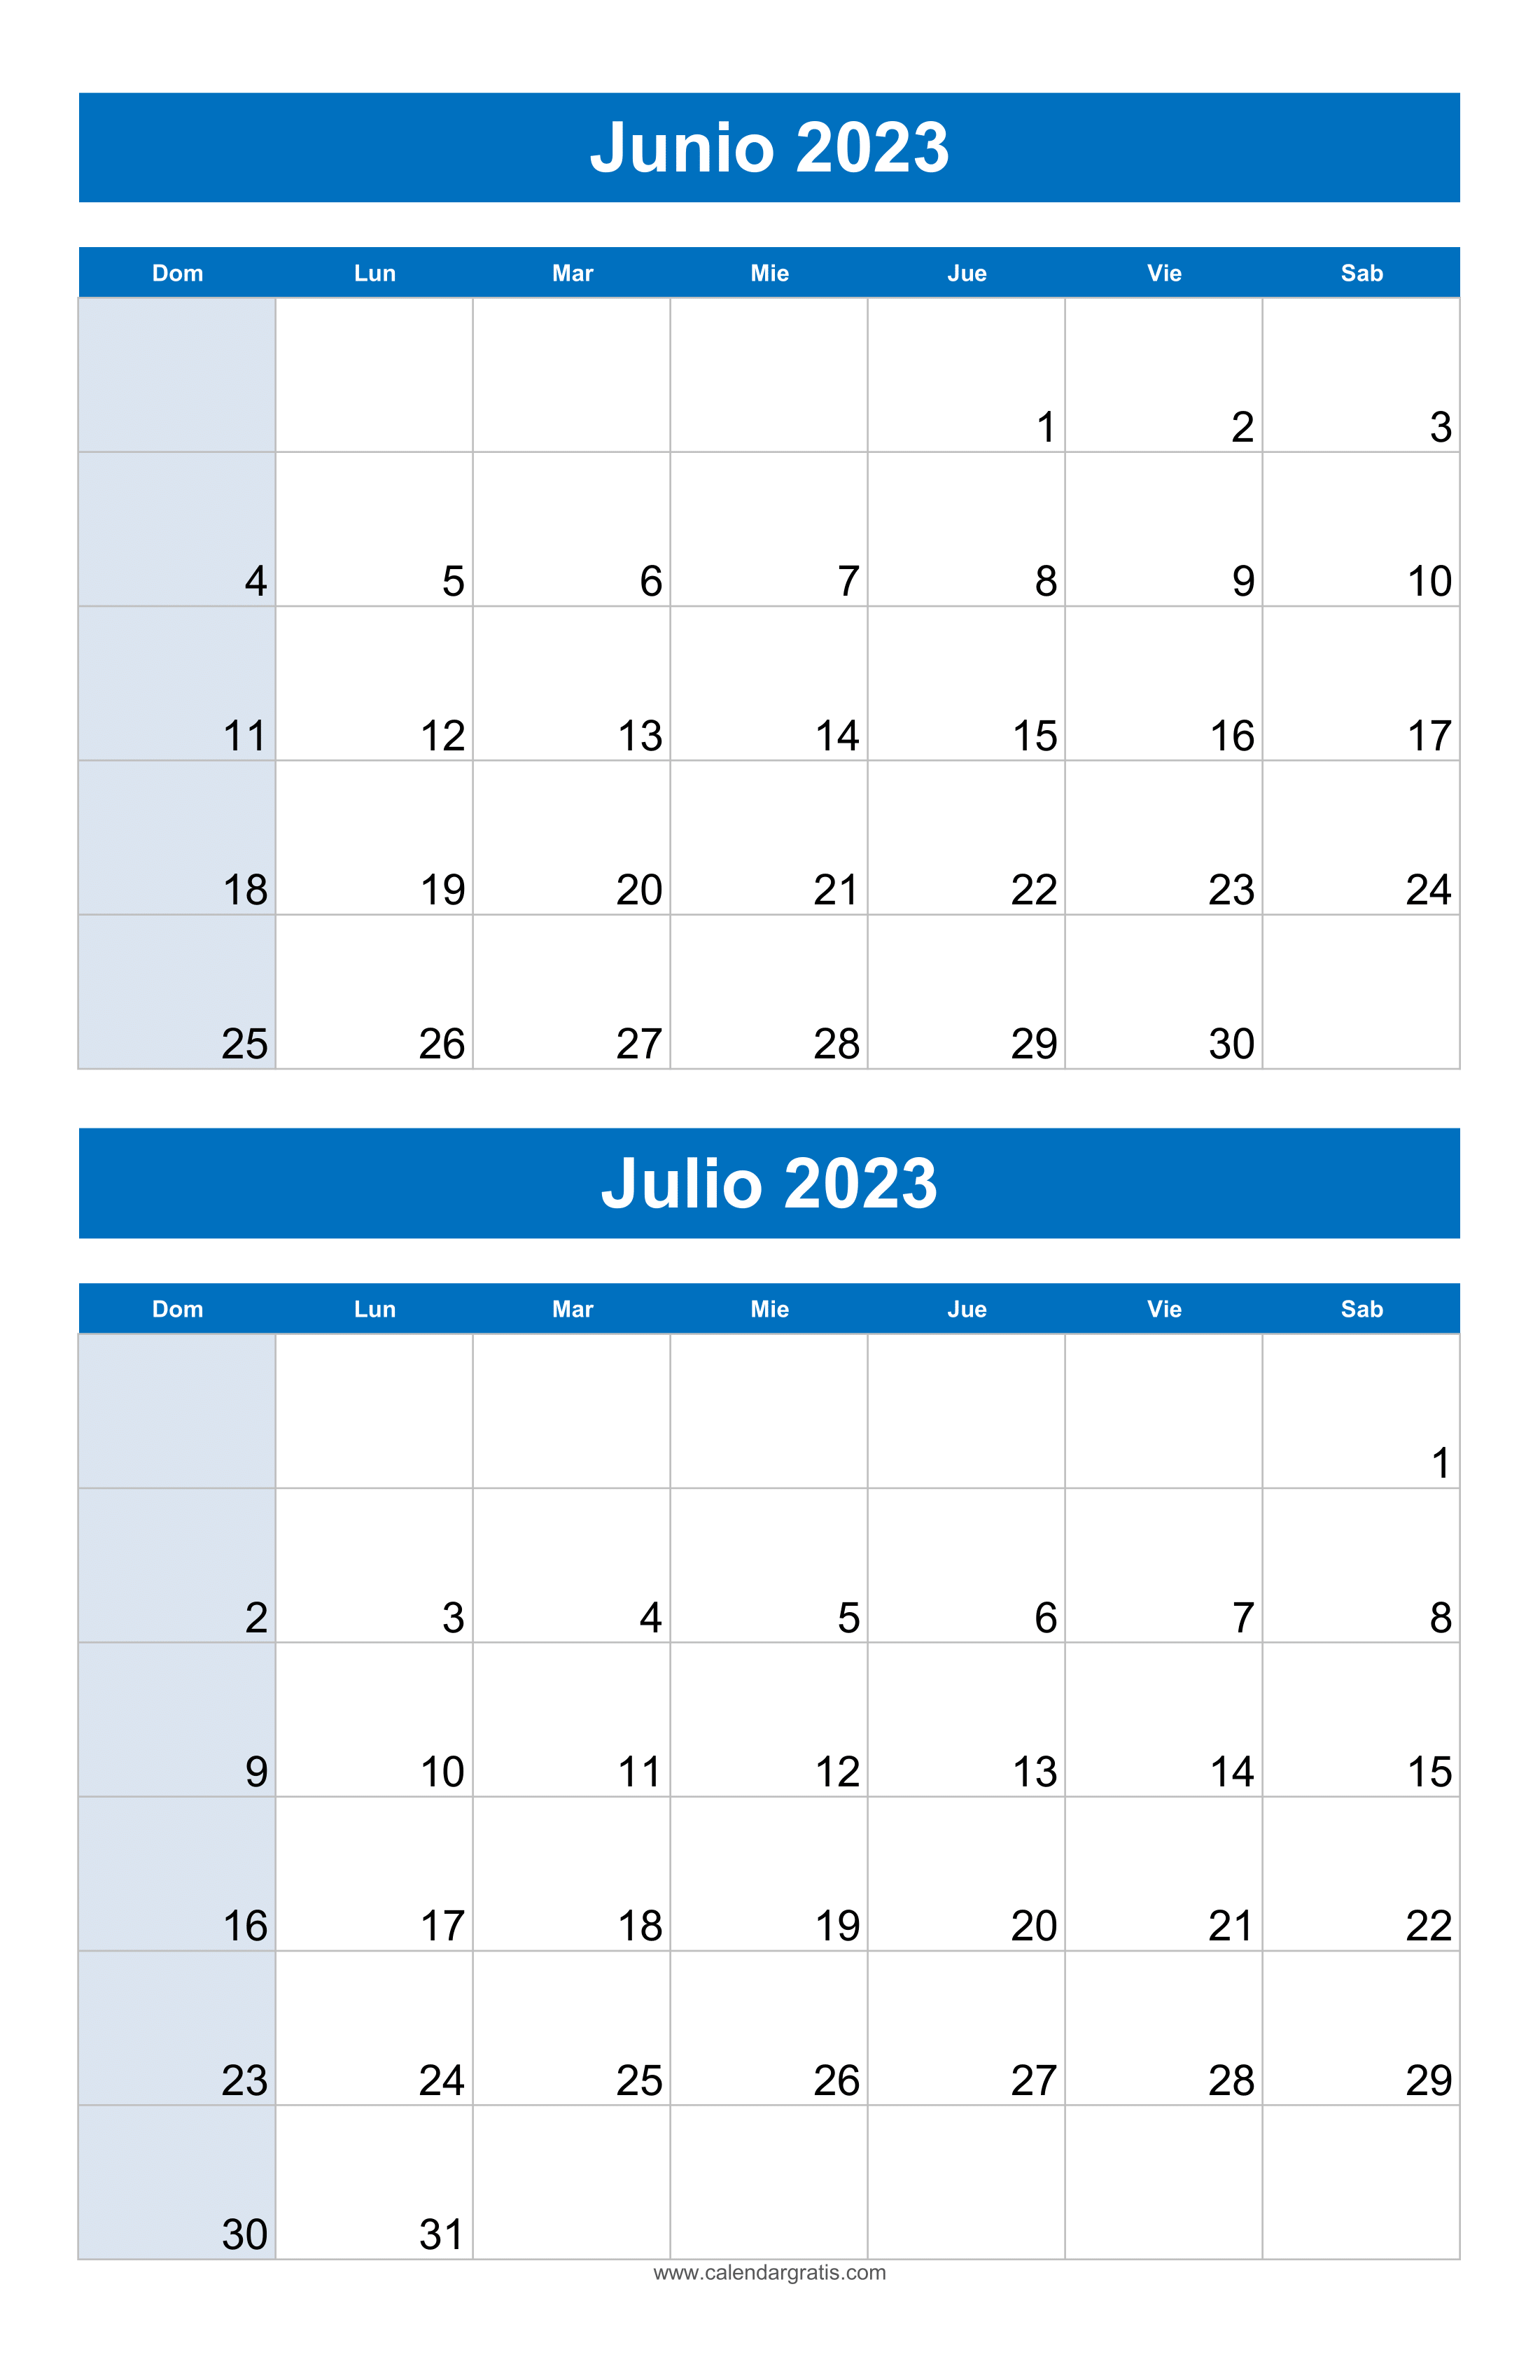 Calendario Junio y Julio 2023 Para Imprimir